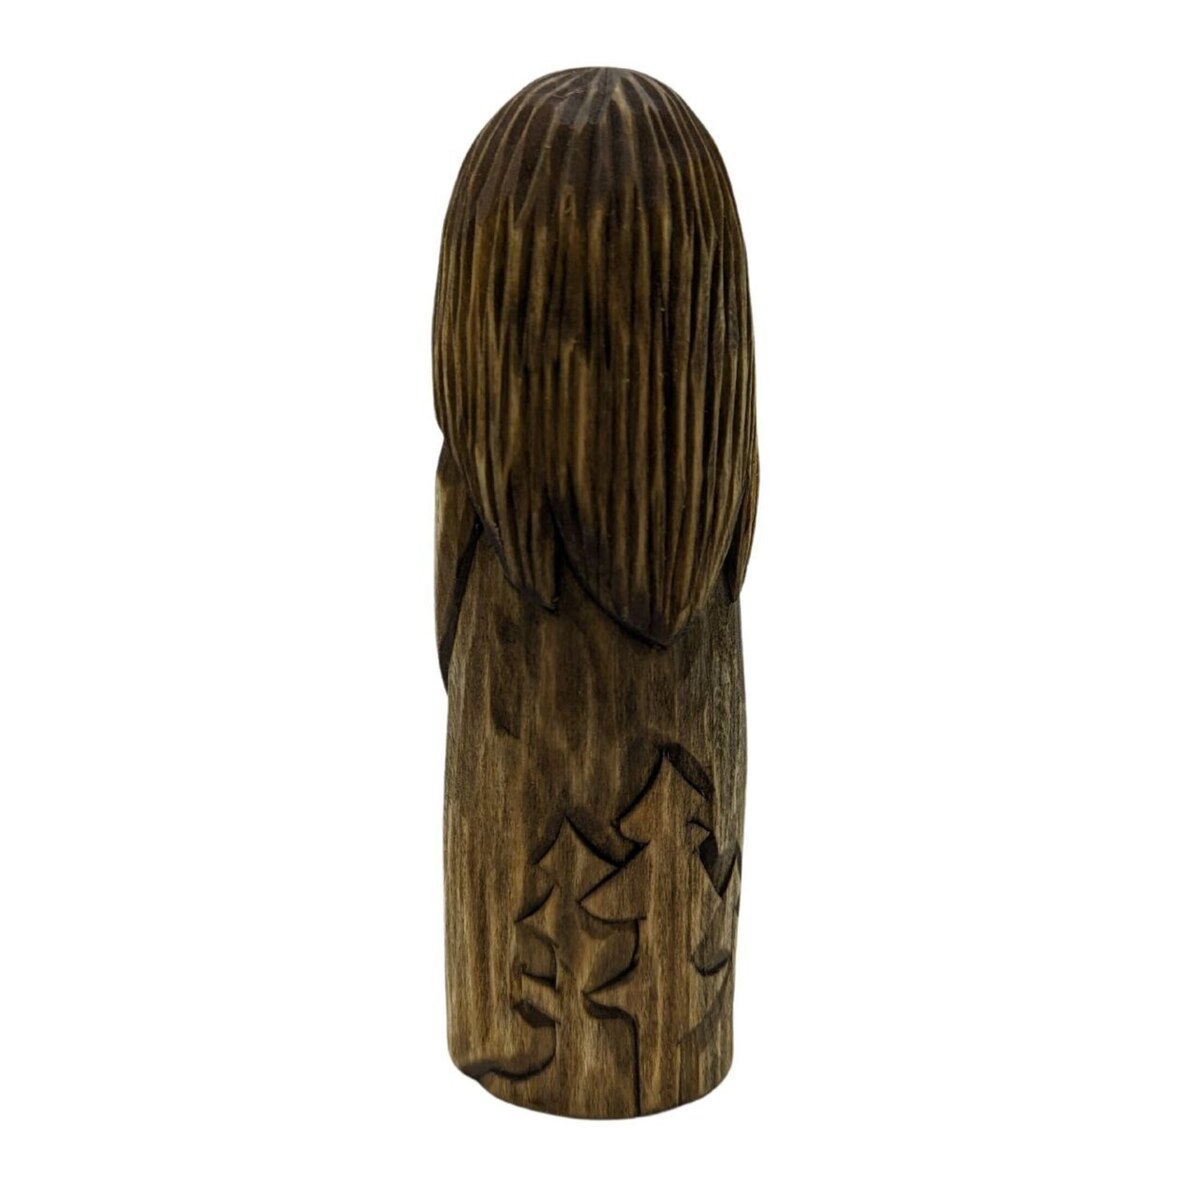 Freyr God wood carved statue   